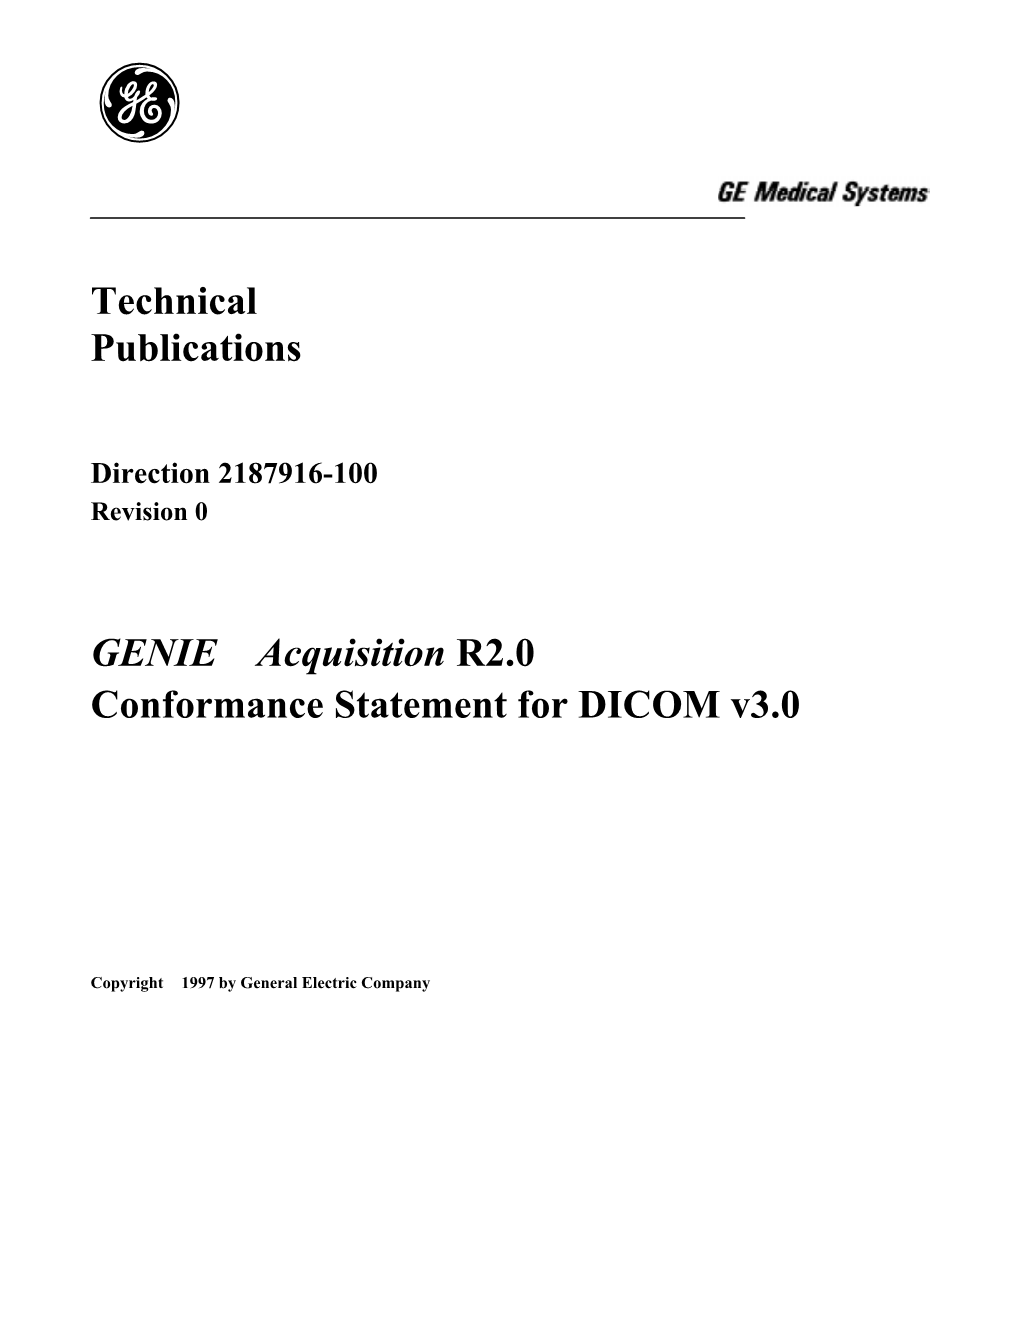 Technical Publications GENIE™ Acquisition R2.0 Conformance